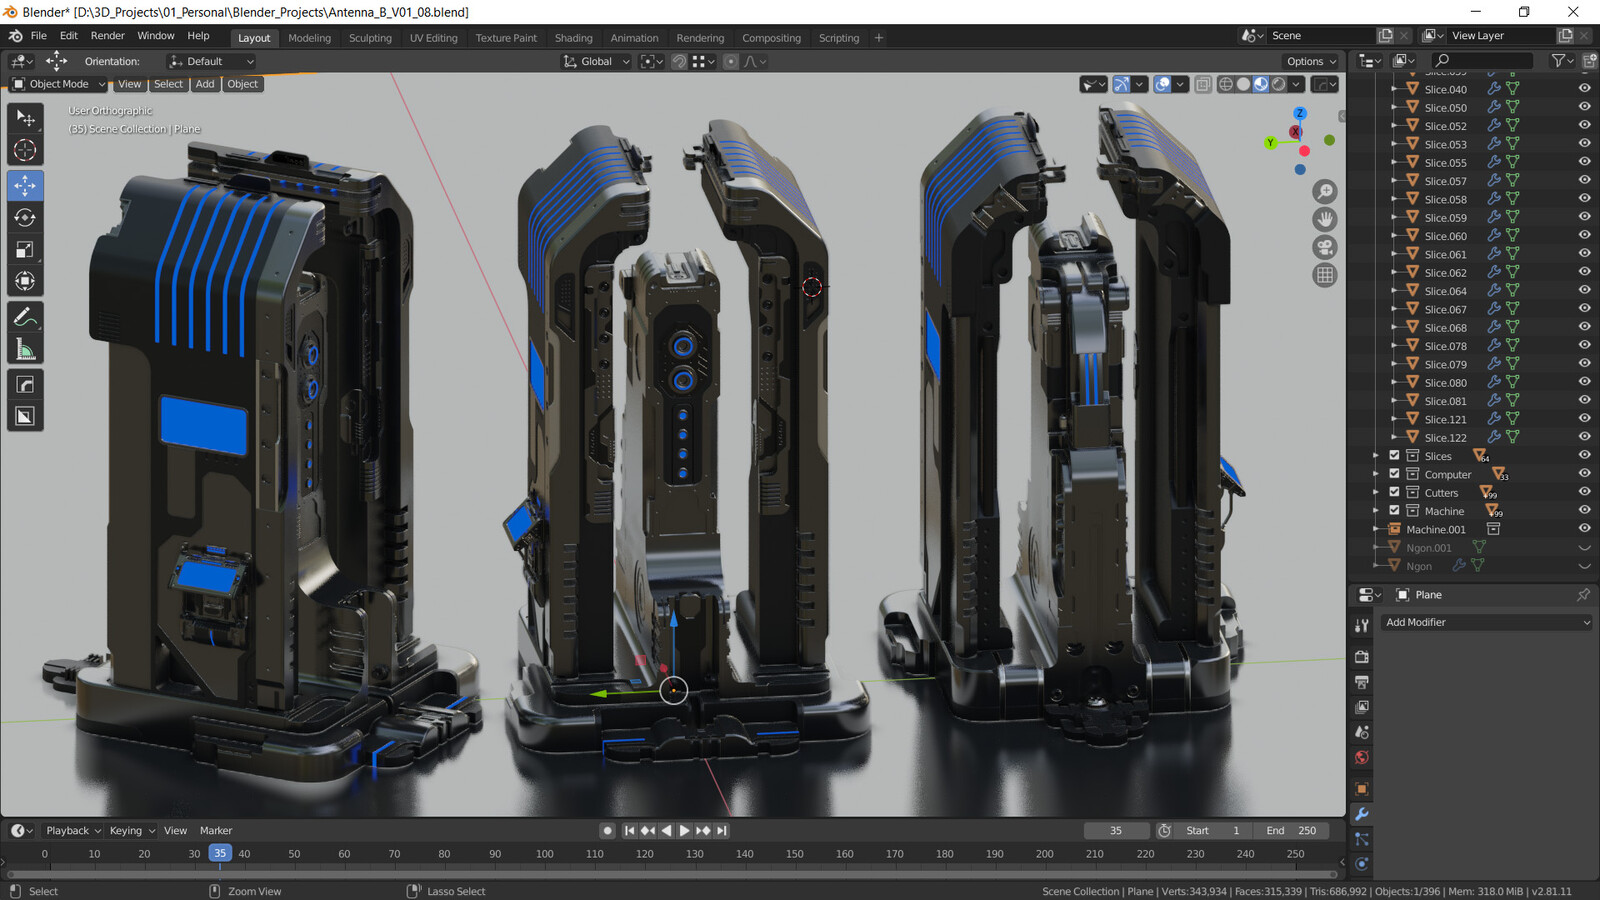 Main machine screenshot from Blender. Hardops/Boxcutter for modeling.